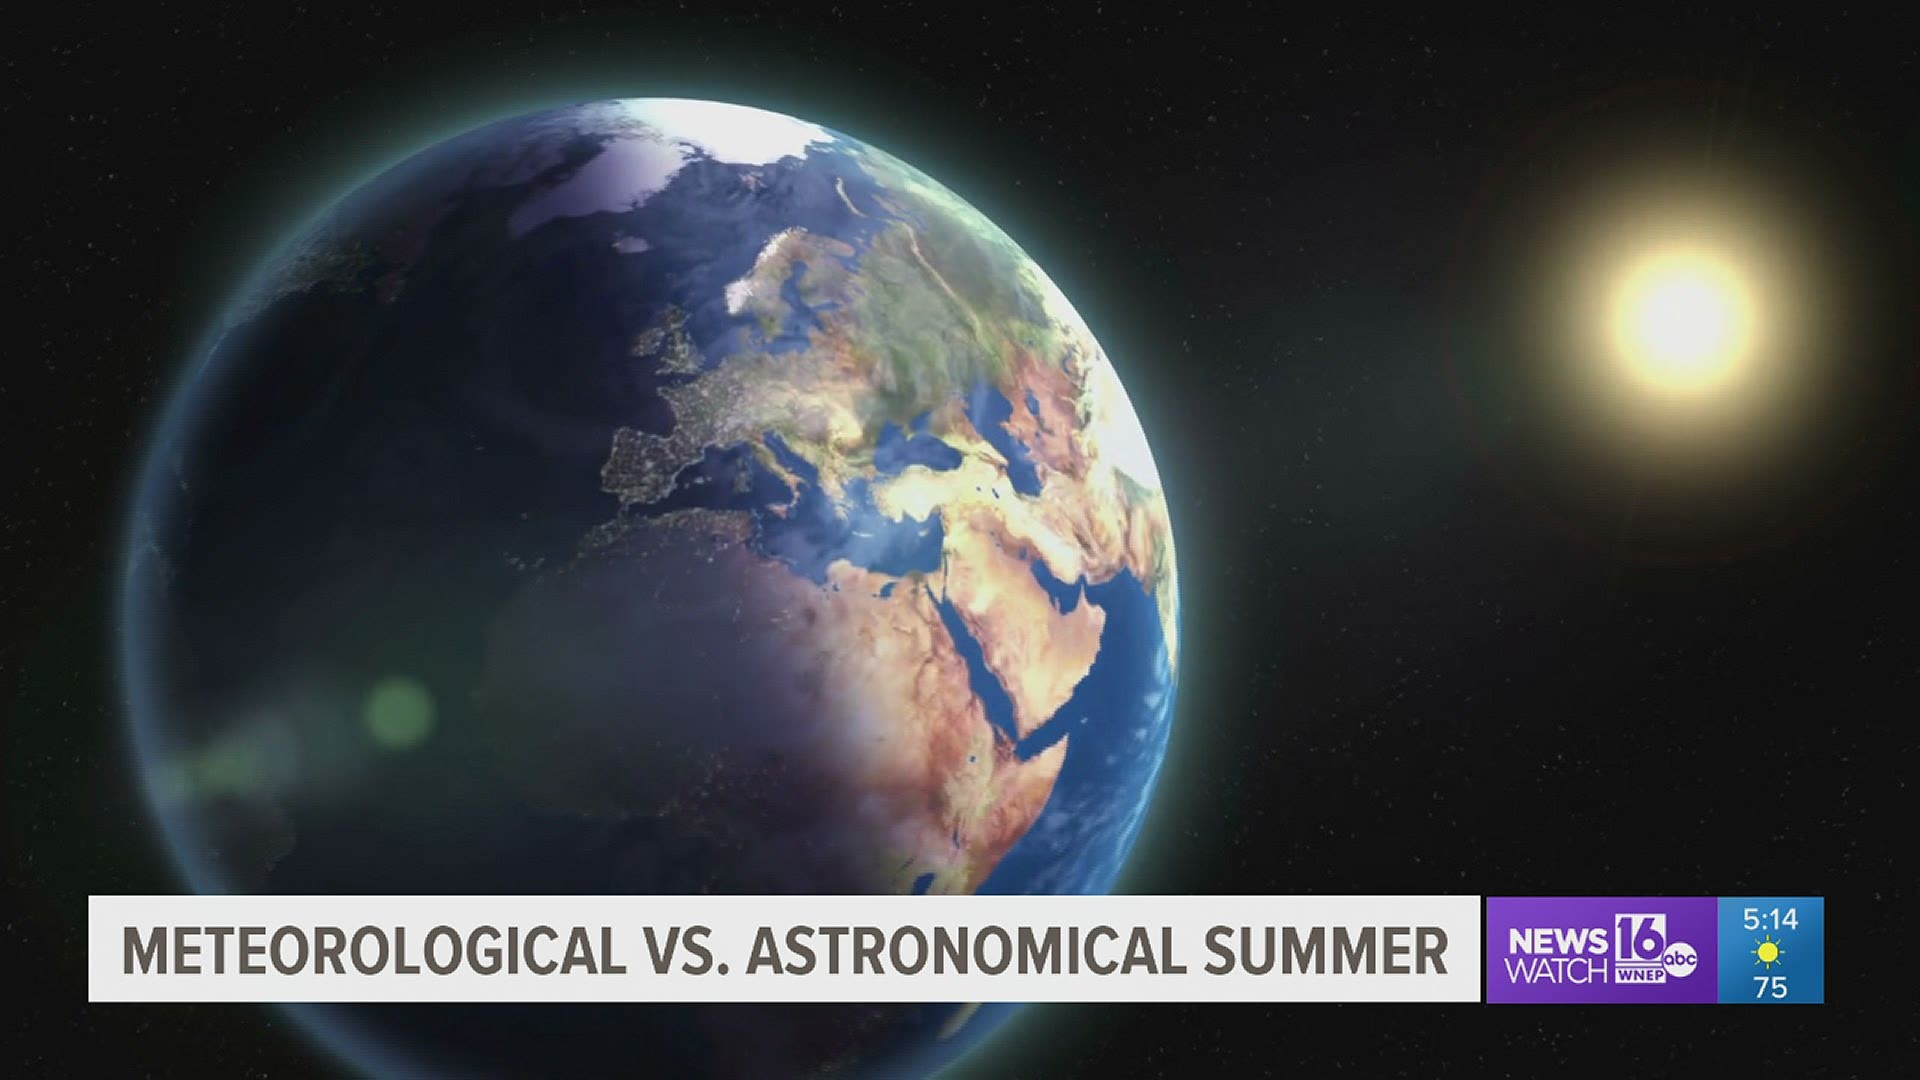 Meteorological vs. Astronomical seasons